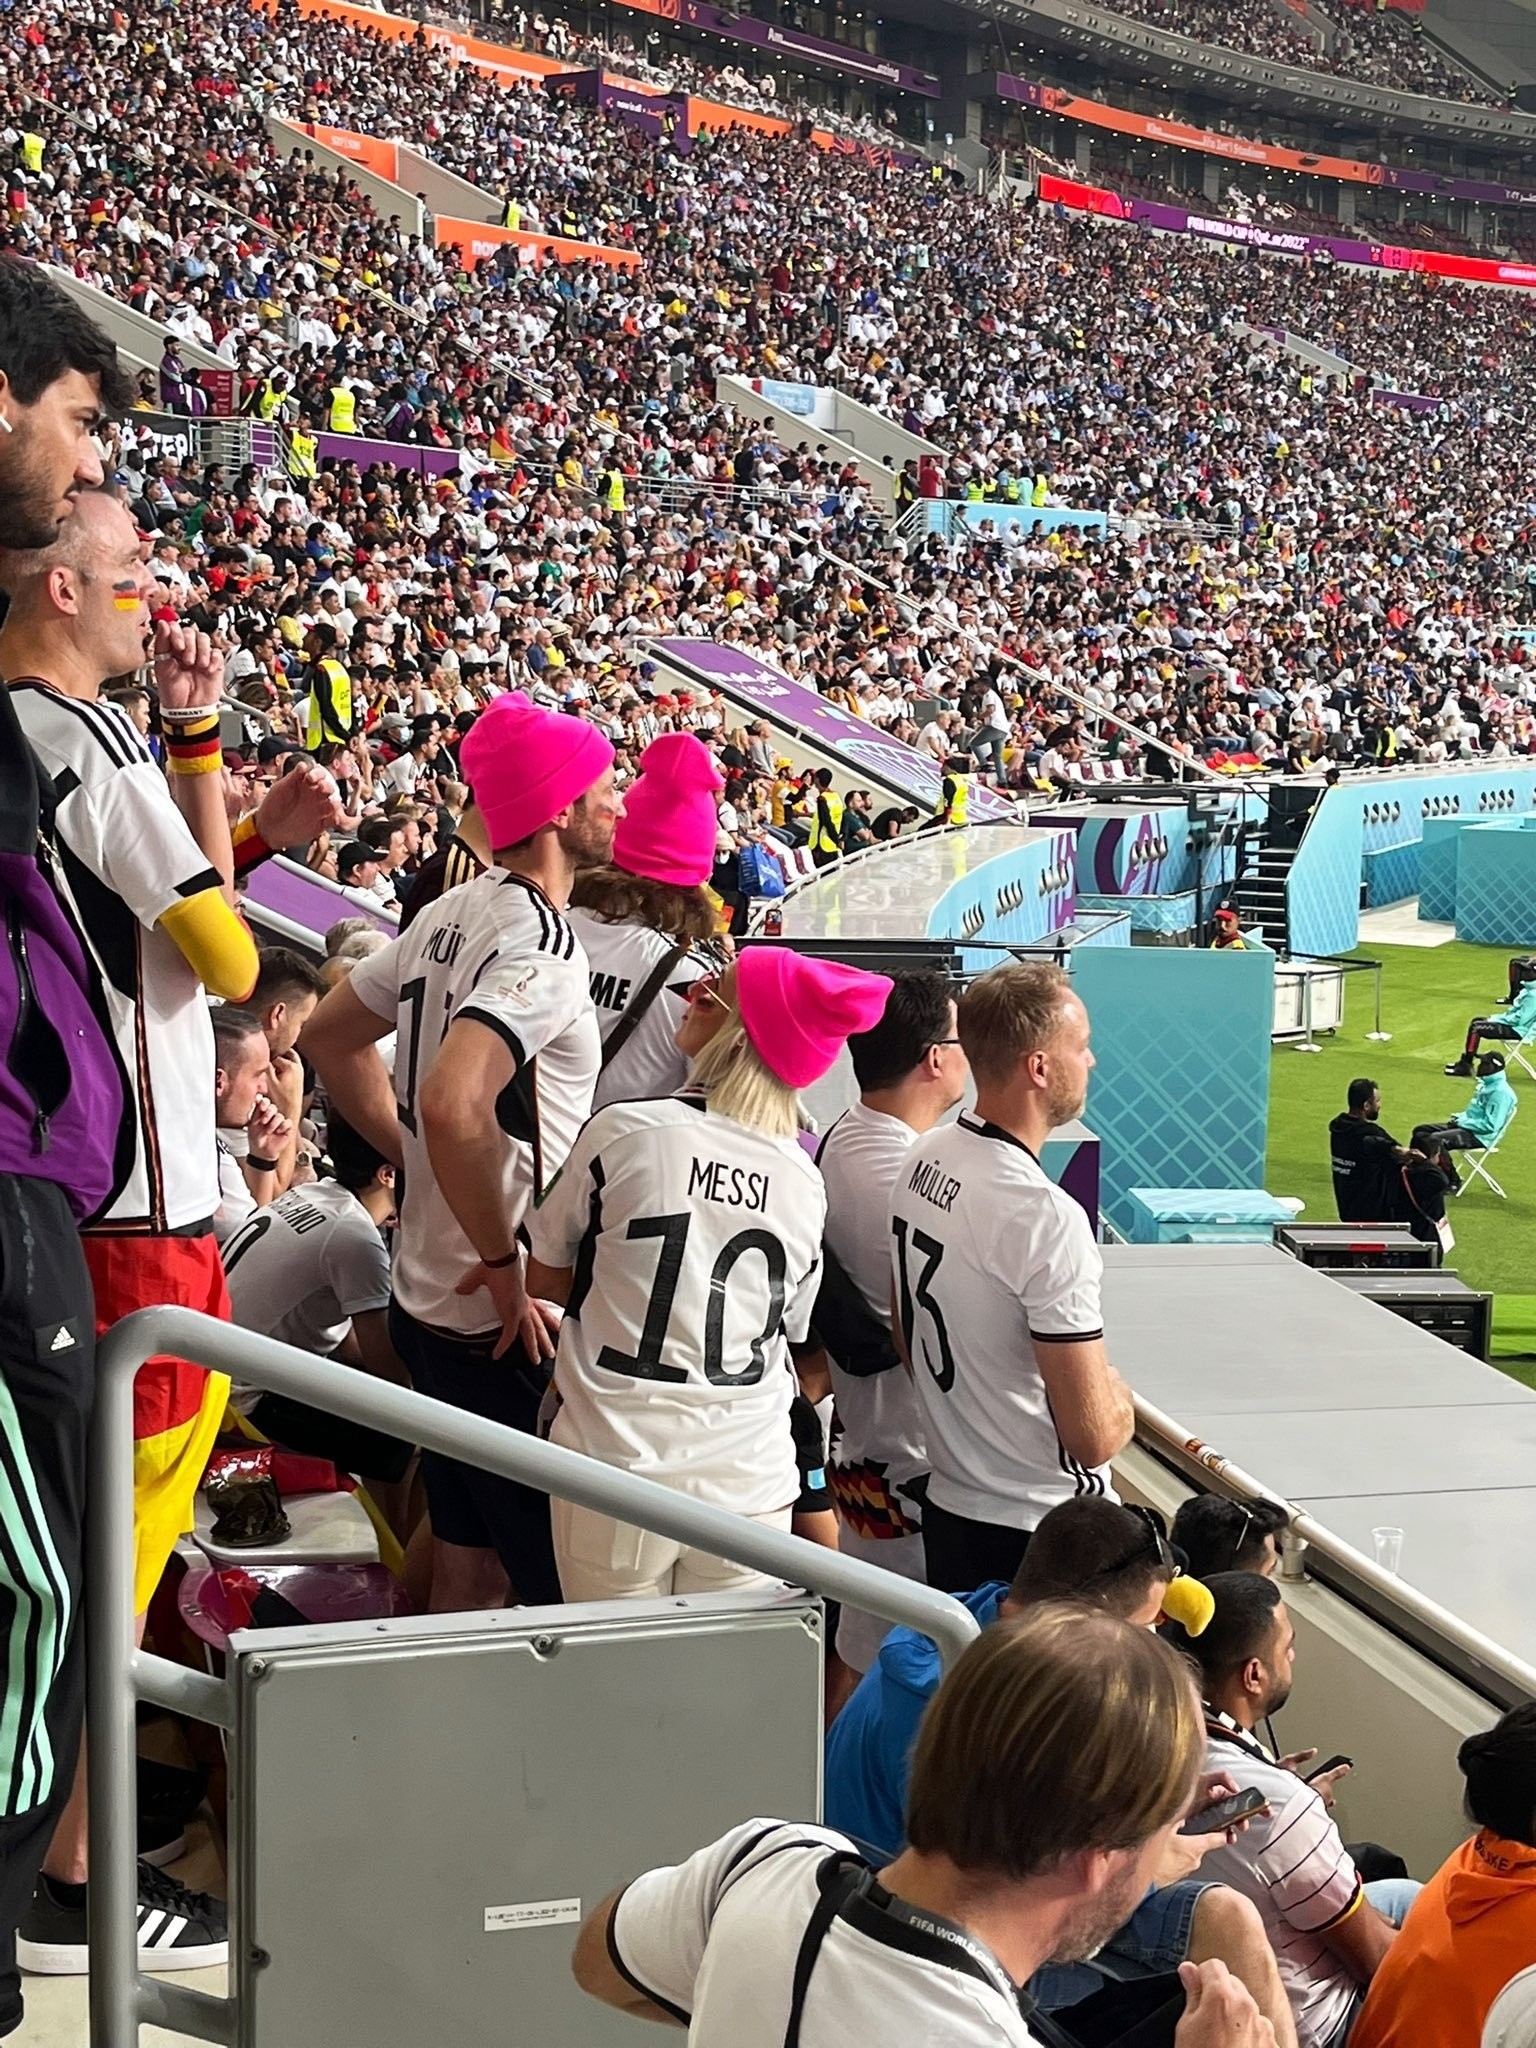 德国女球迷身穿印有梅西的德国球衣现场看球